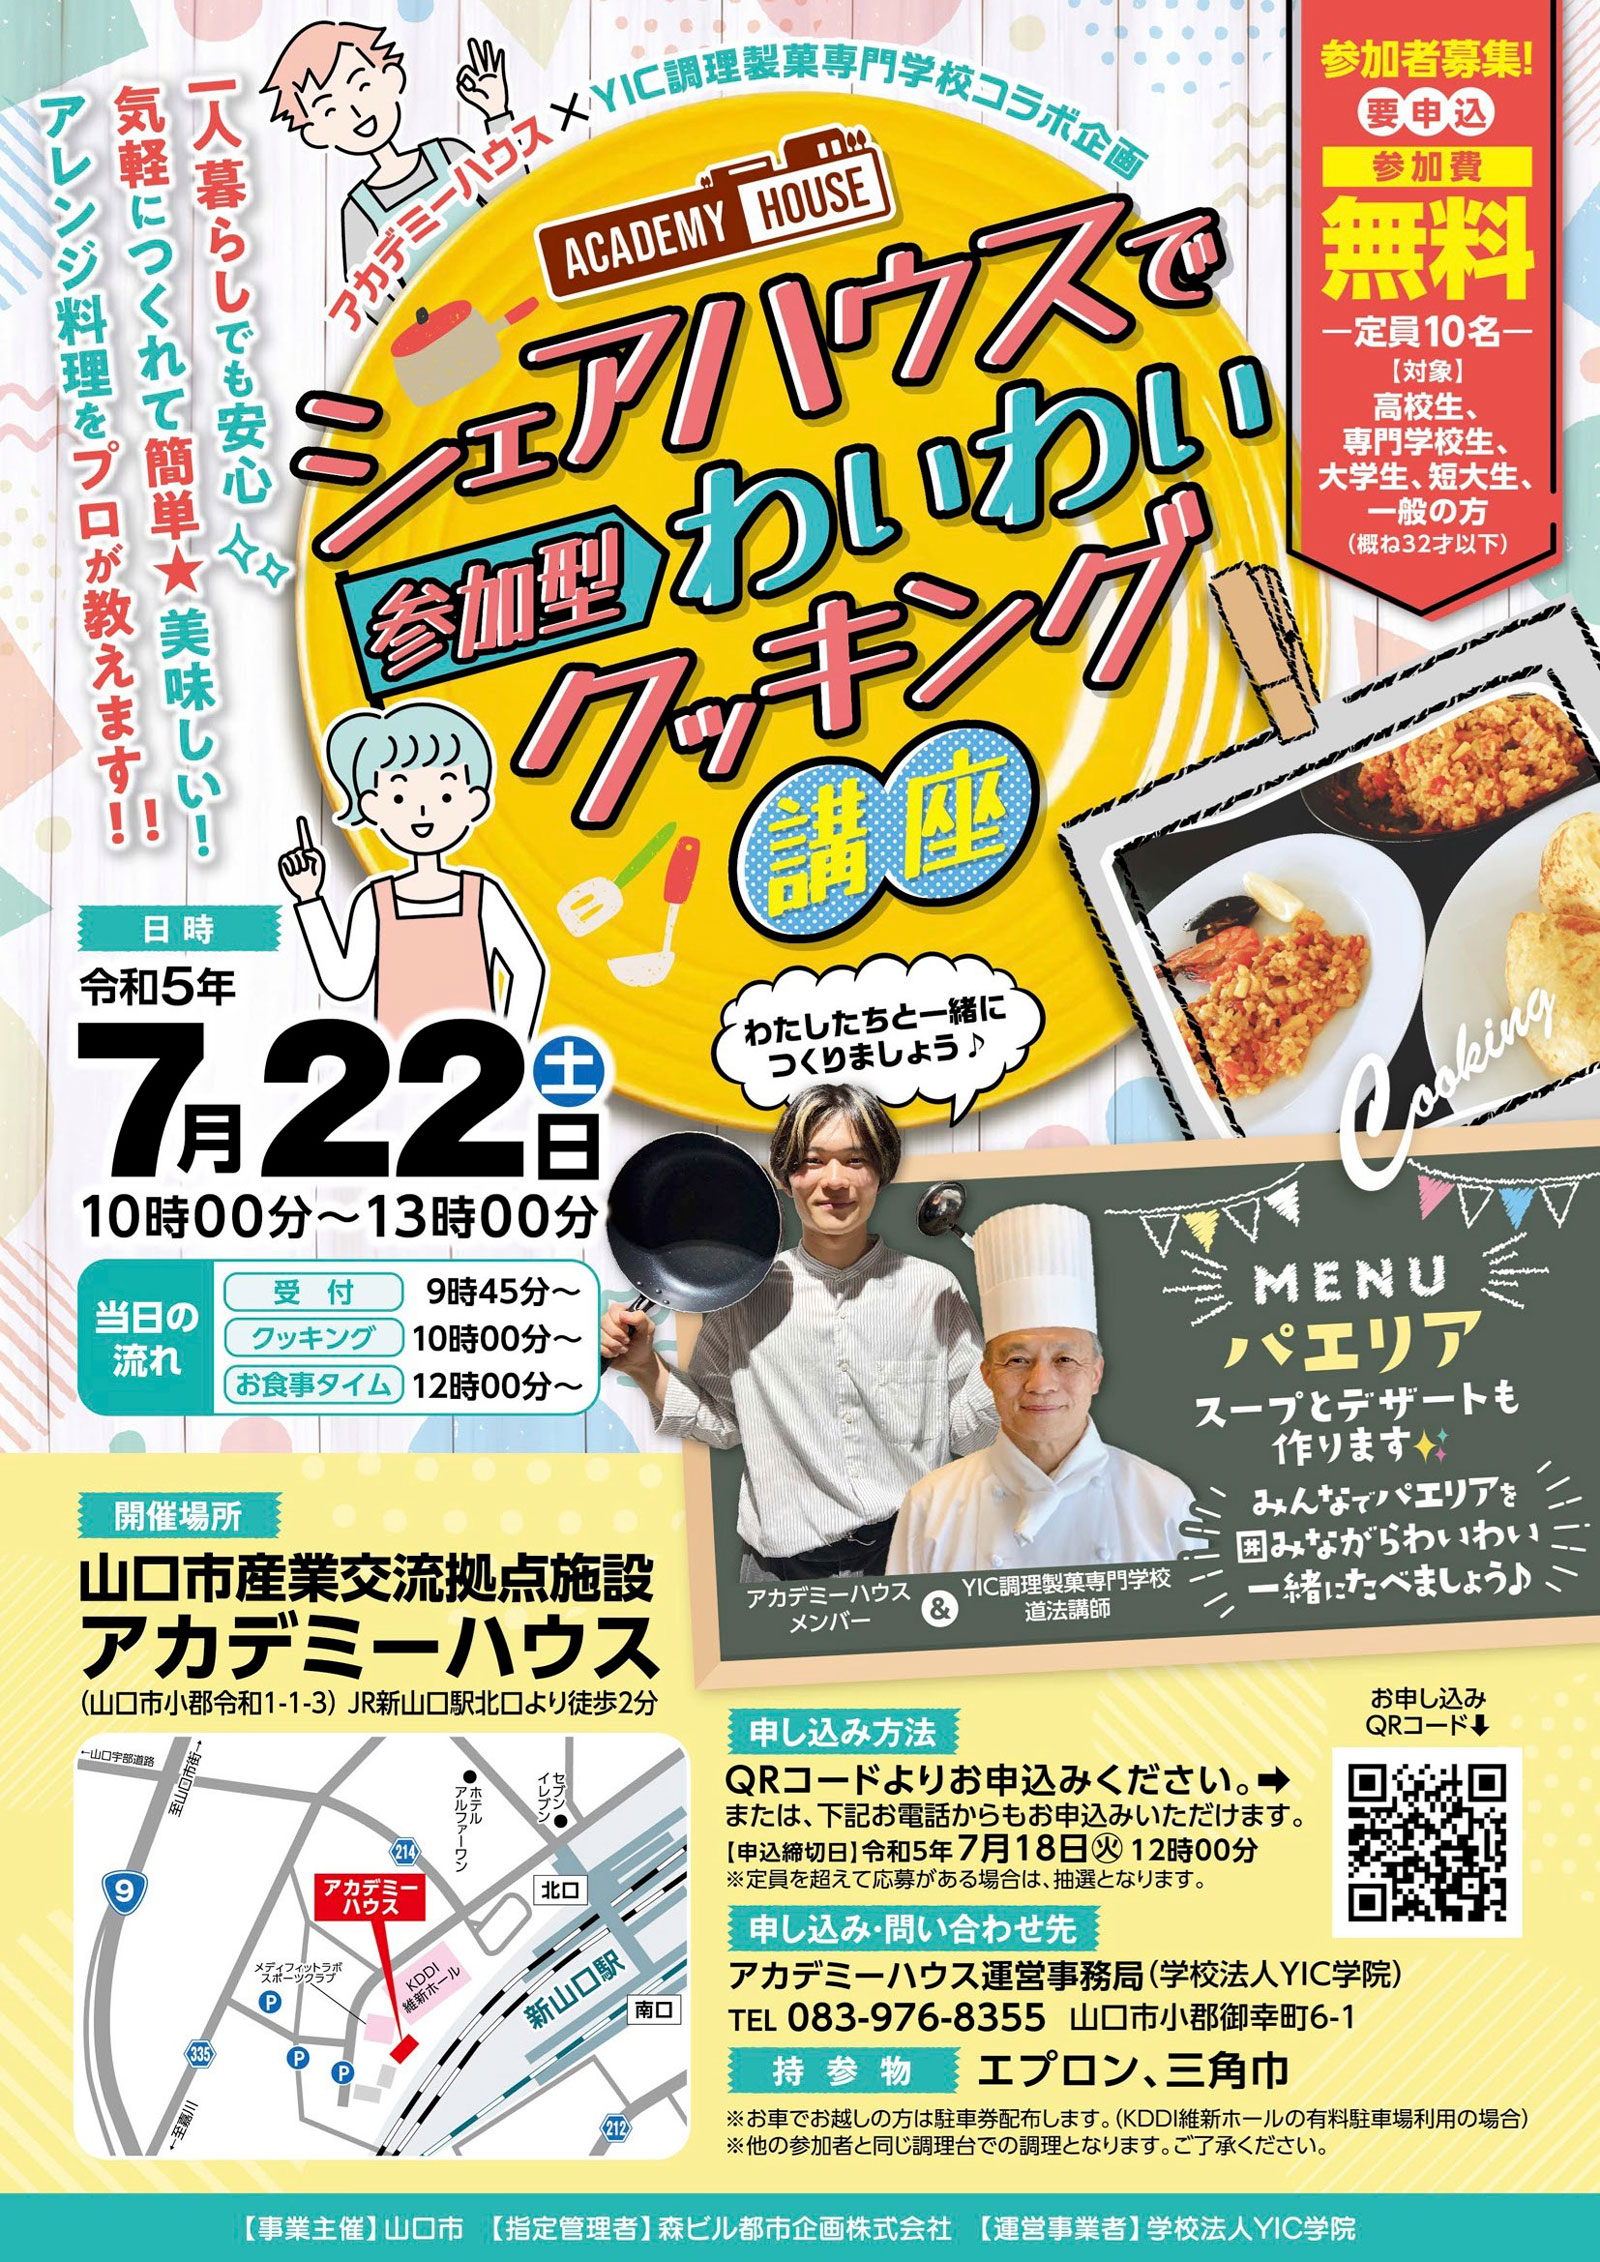 【7/22】アカデミーハウス×YIC調理製菓専門学校コラボ企画「シェアハウスでわいわいクッキング講座」